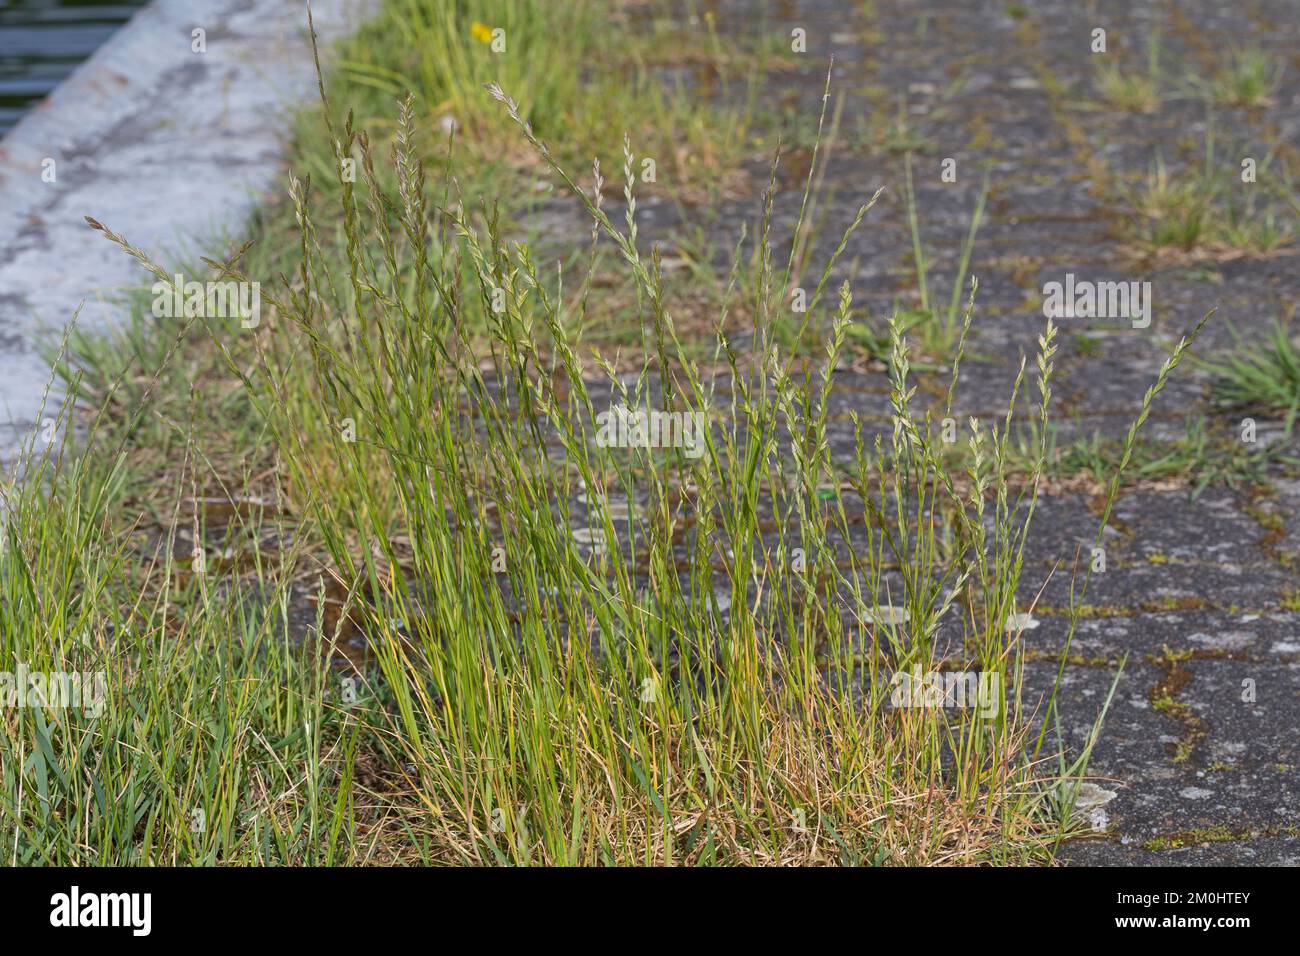 Deutsches Weidelgras, in Pflasterfugen, Lolium perenne, perennial rye-grass, English ryegrass, winter ryegrass, Le ray-grass anglais Stock Photo